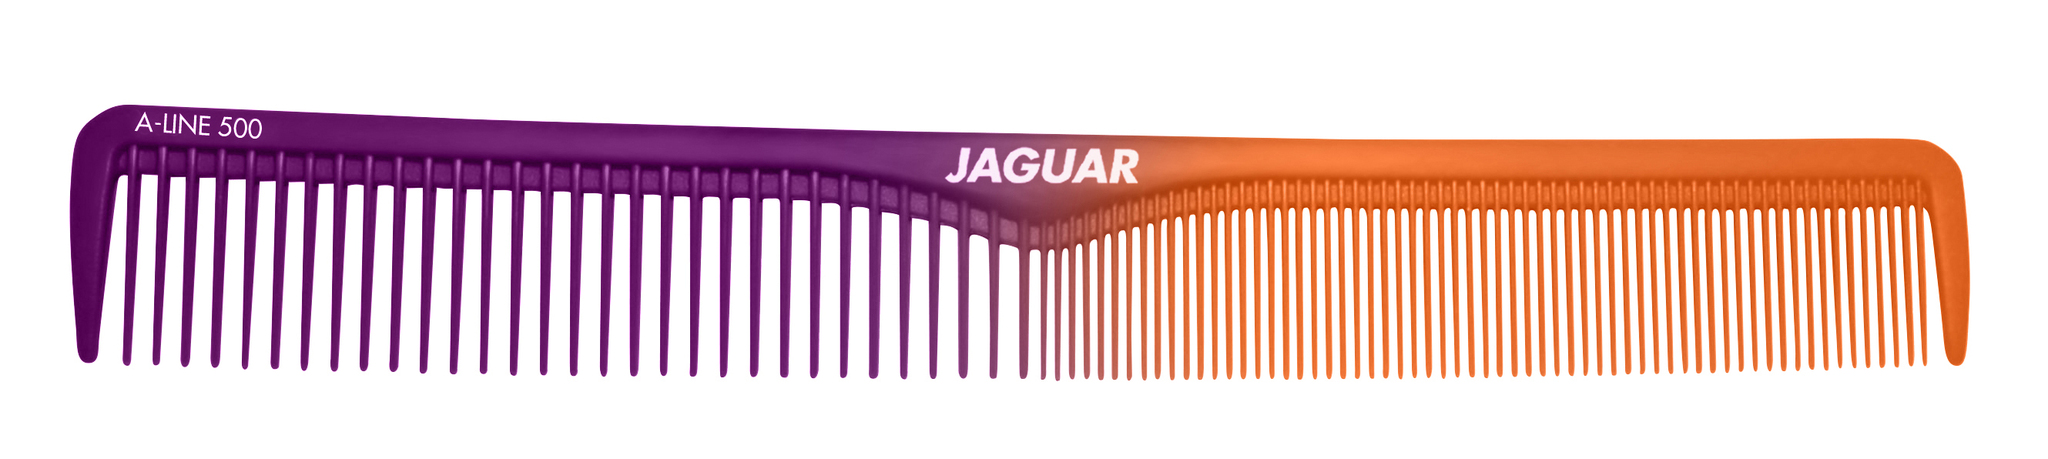 Jaguar Comfort Slice Scissors Set "The Stage Is Yours"